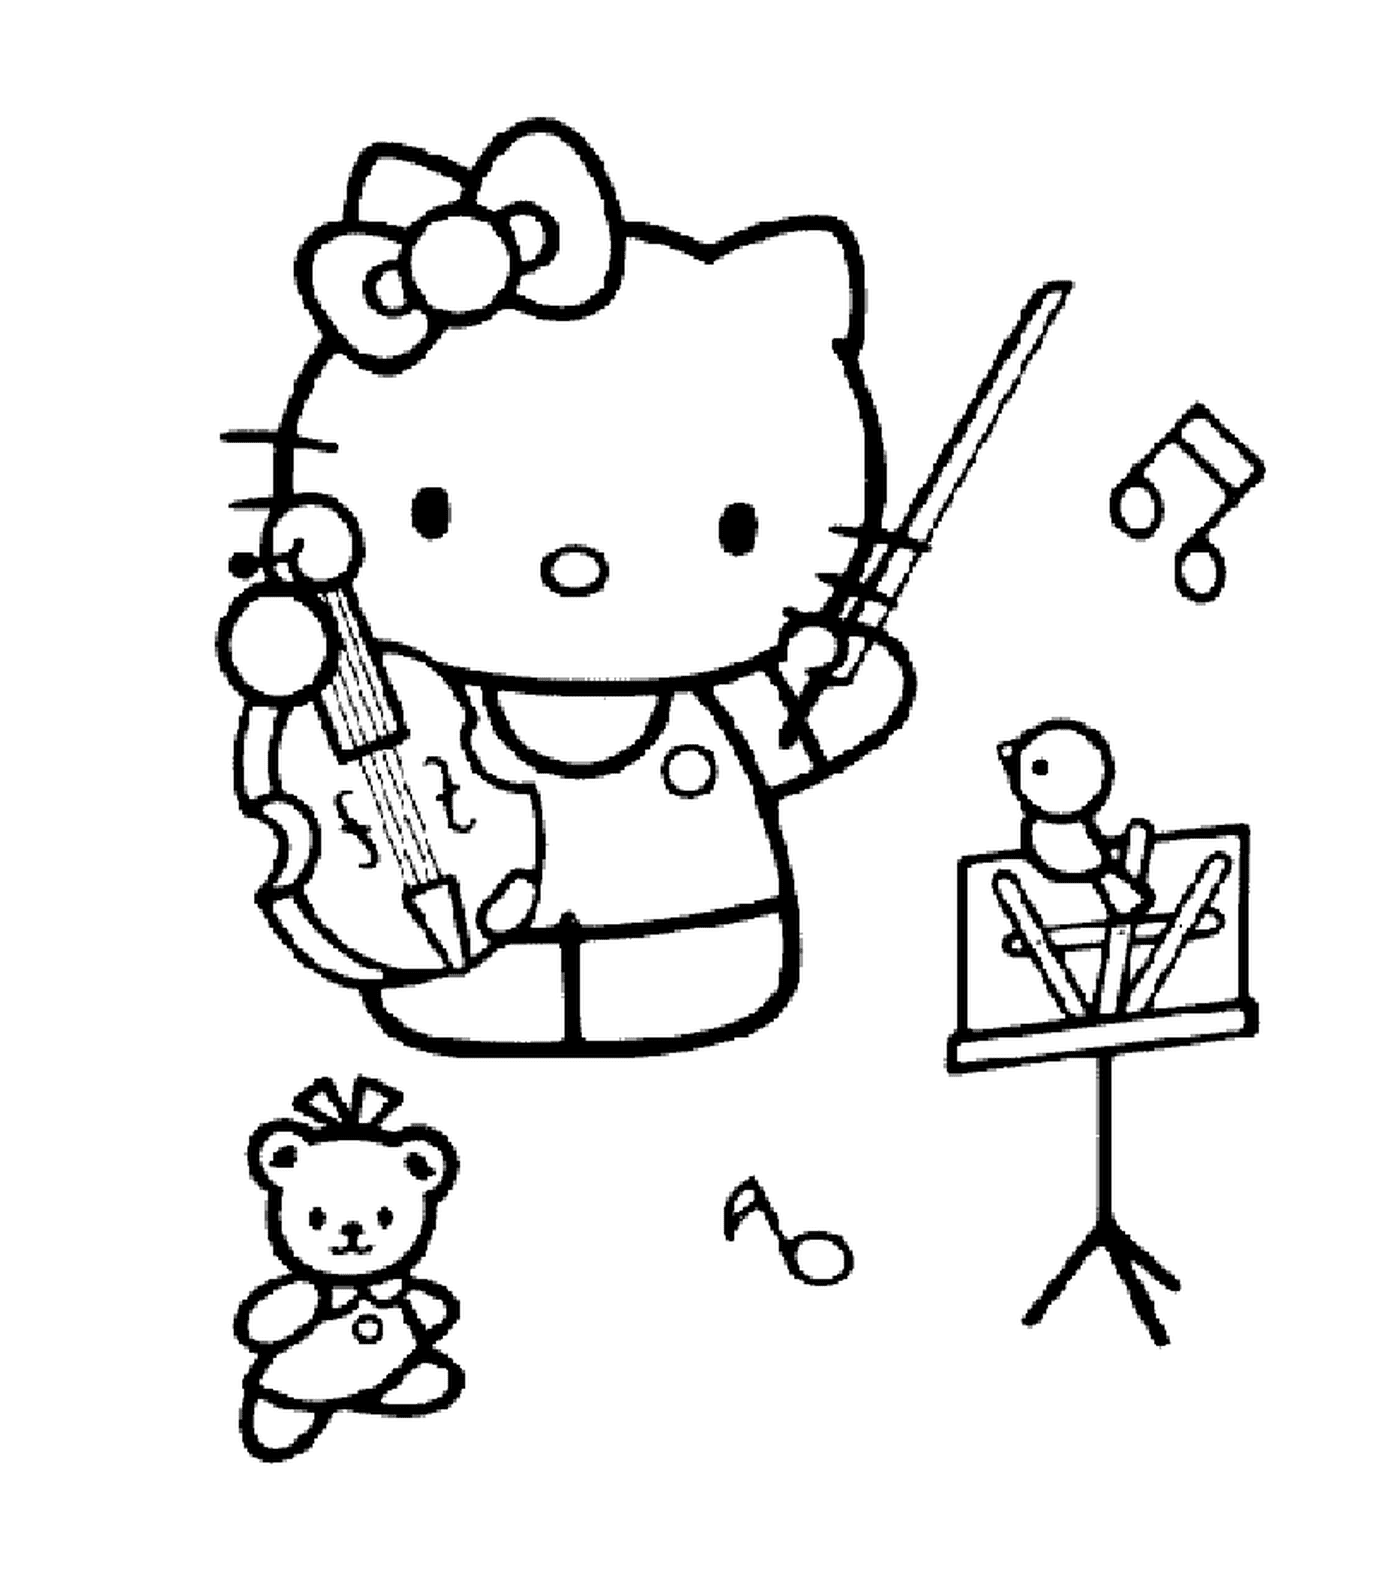  Ciao Kitty suonare uno strumento musicale 